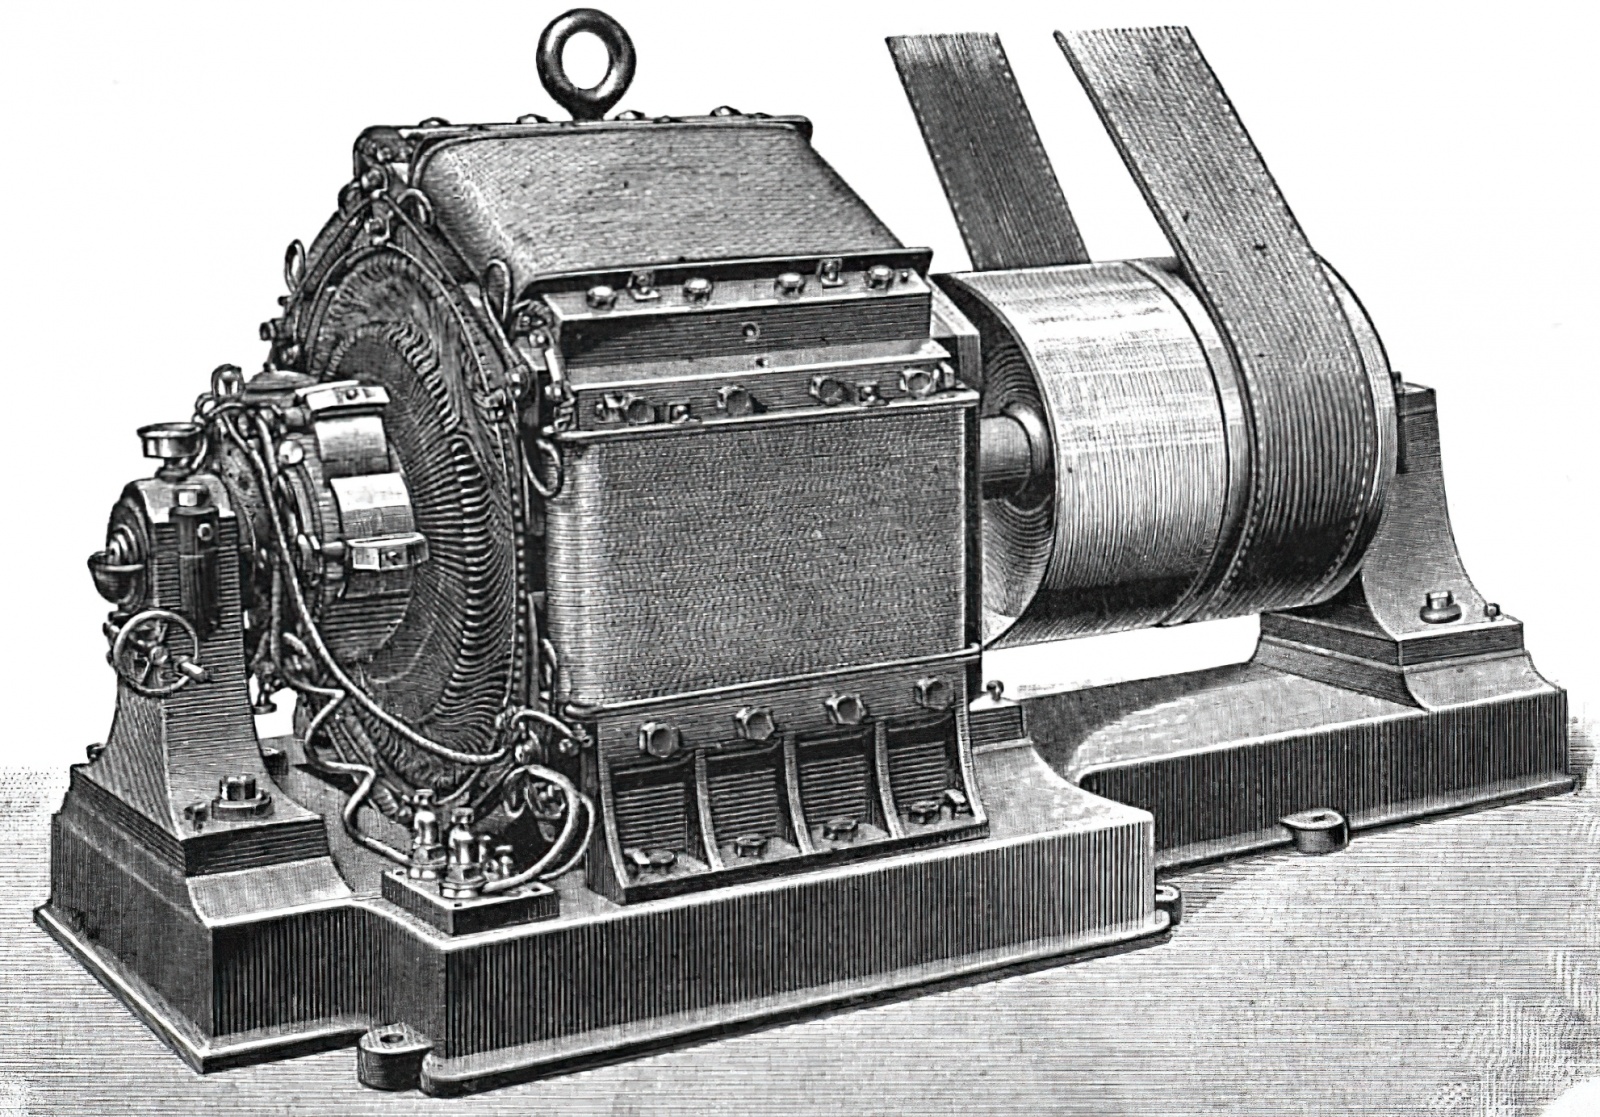 Одна из машин Тюри. Самая крупная из них, весом 4500 кг, генерировала 66 кВт. Источник: Wikimedia Commons